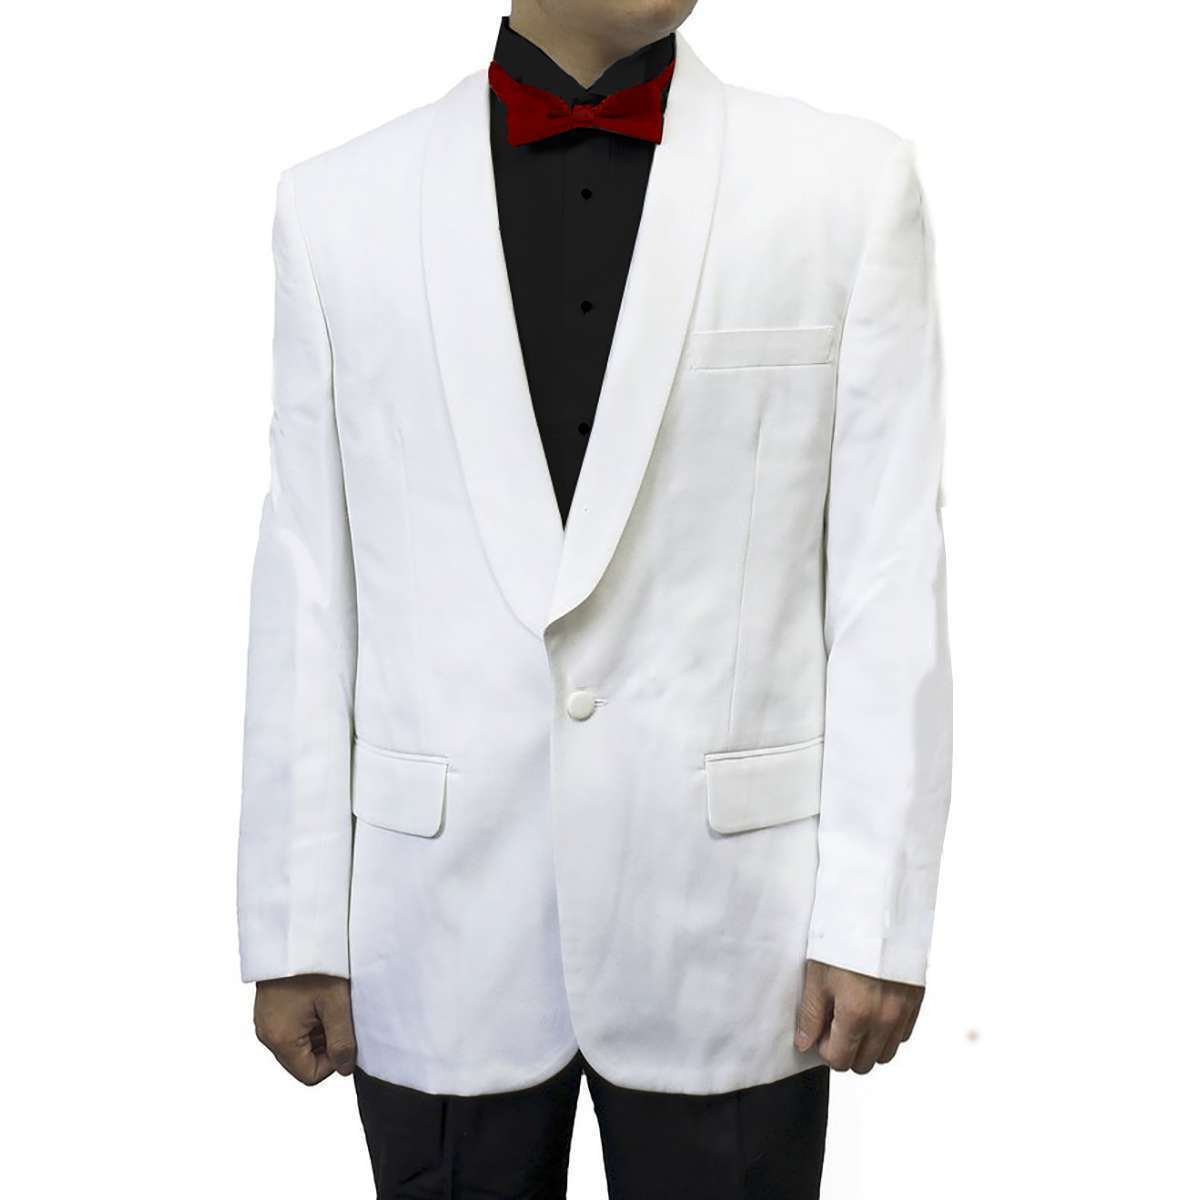 Men's 2 Piece White Dinner Jacket & Black Tuxedo Pants